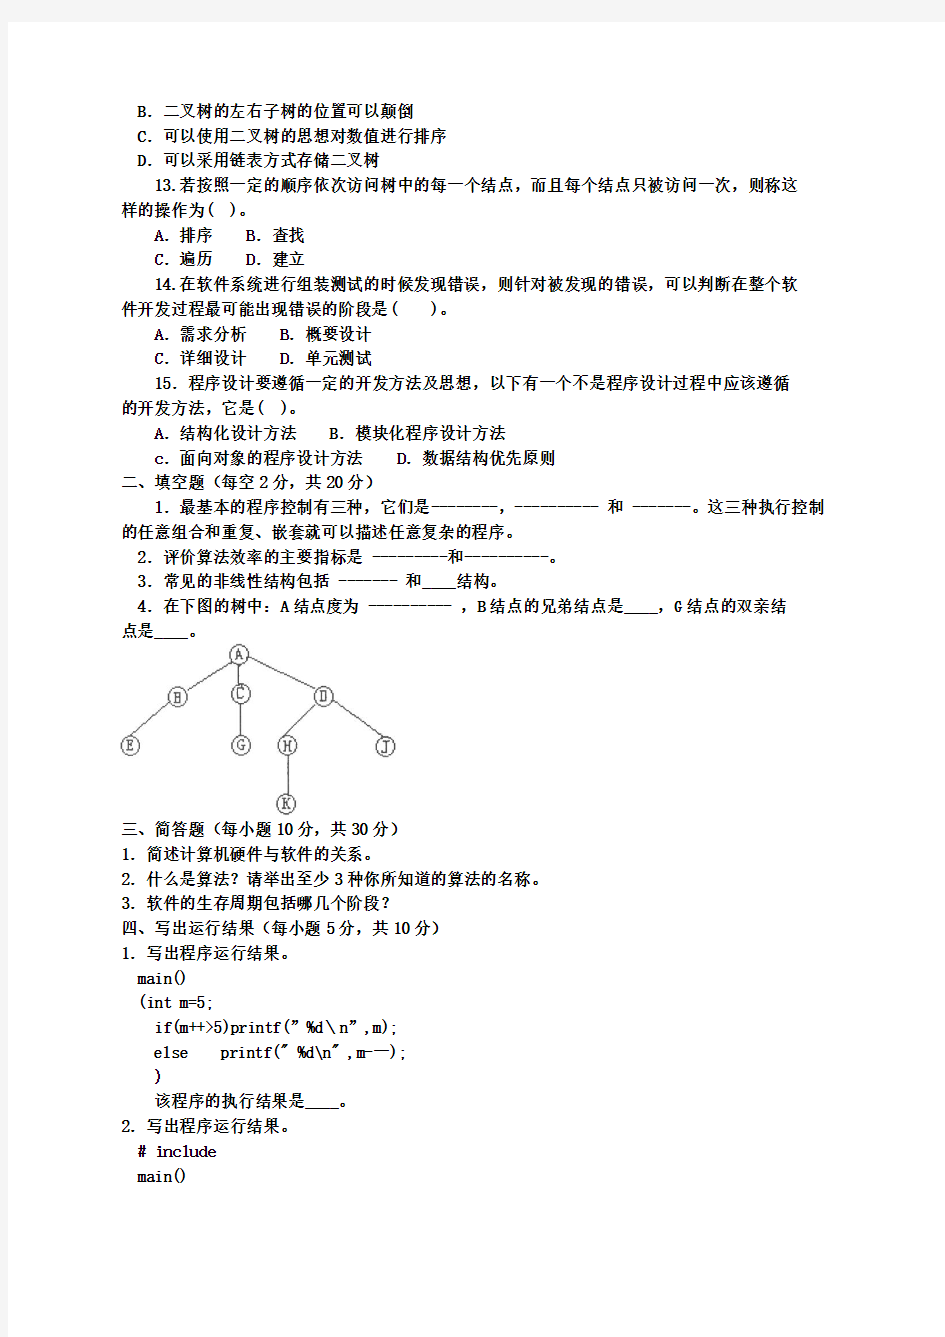 程序设计基础模拟考题1(201312) 文件